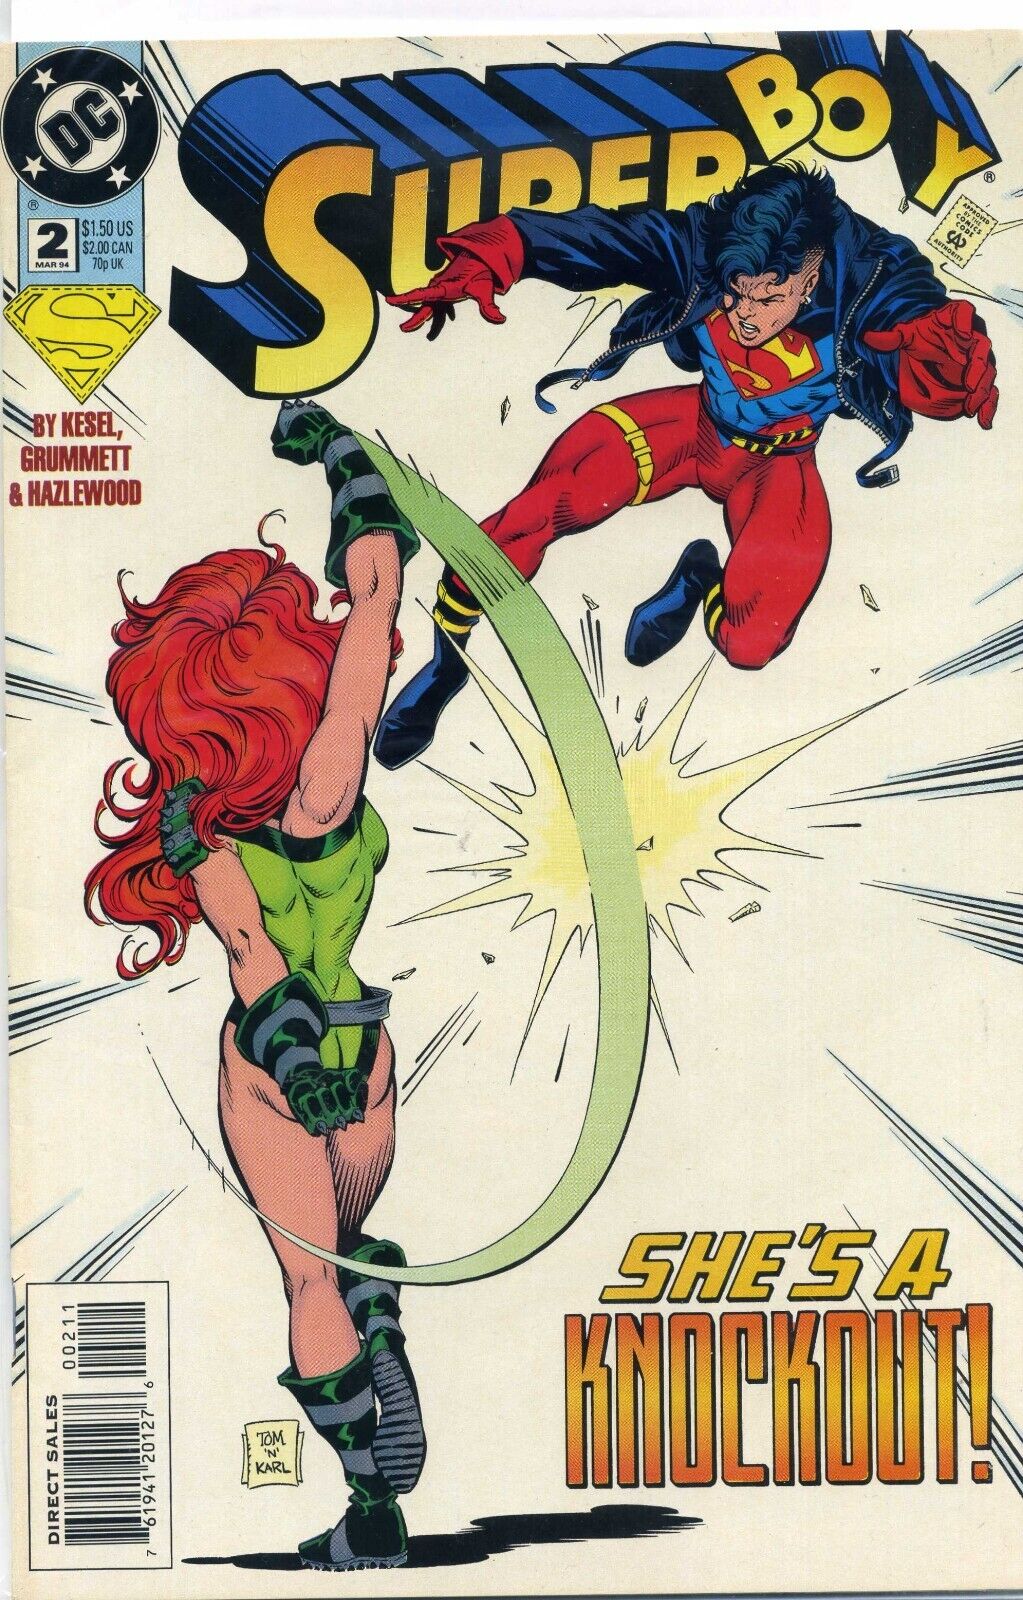 Superboy #2 (DC Comics March 1994)